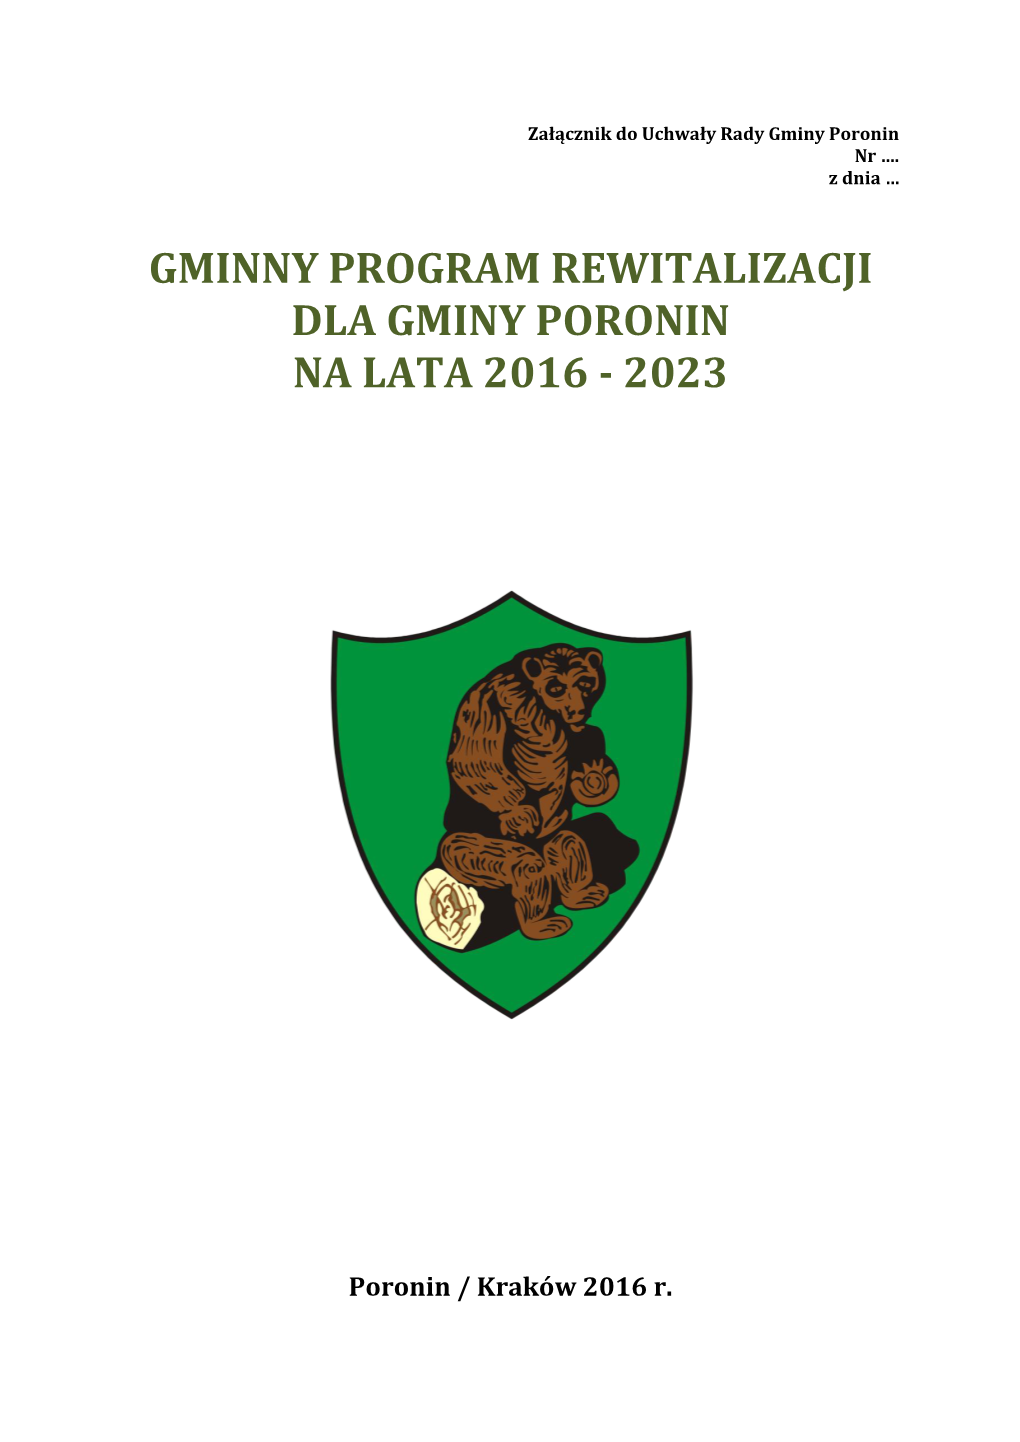 Gminny Program Rewitalizacji Dla Gminy Poronin Na Lata 2016 - 2023